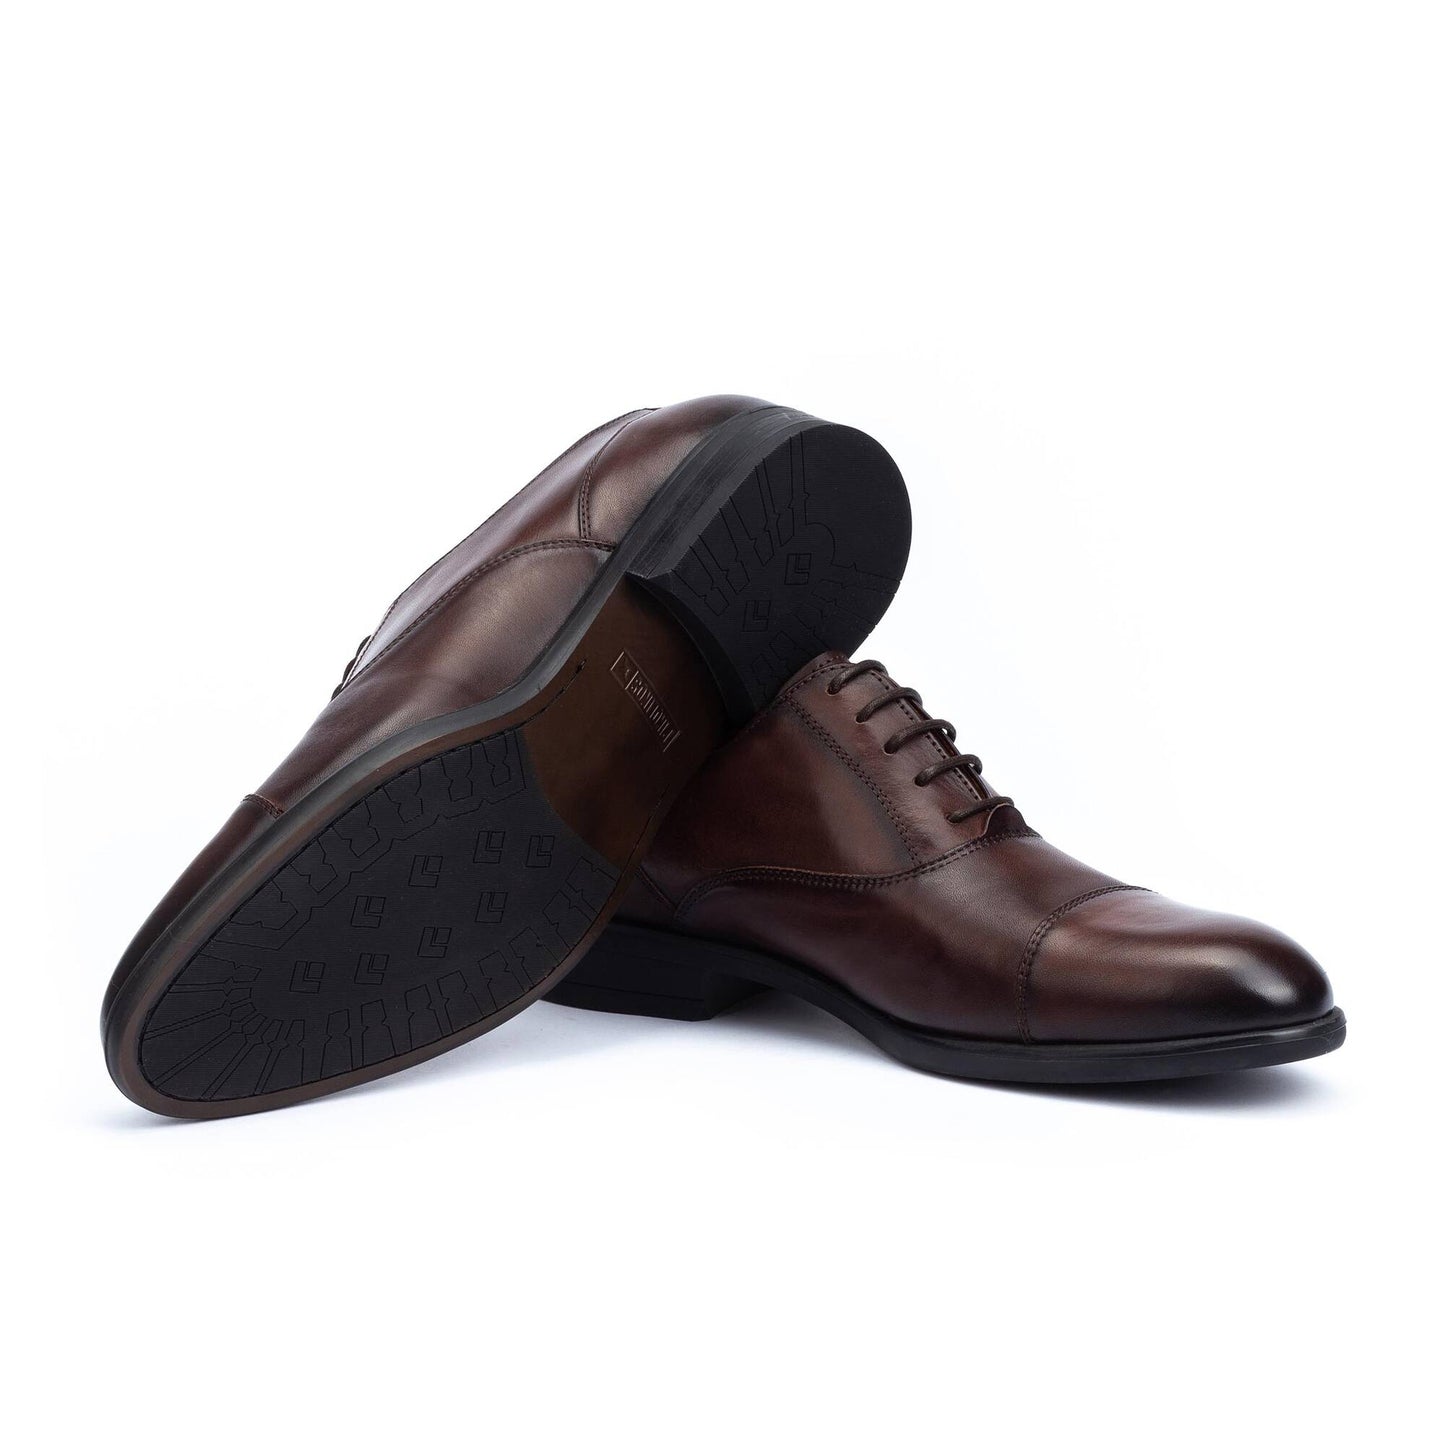 Bristol Leather Cap Toe Dress Shoes